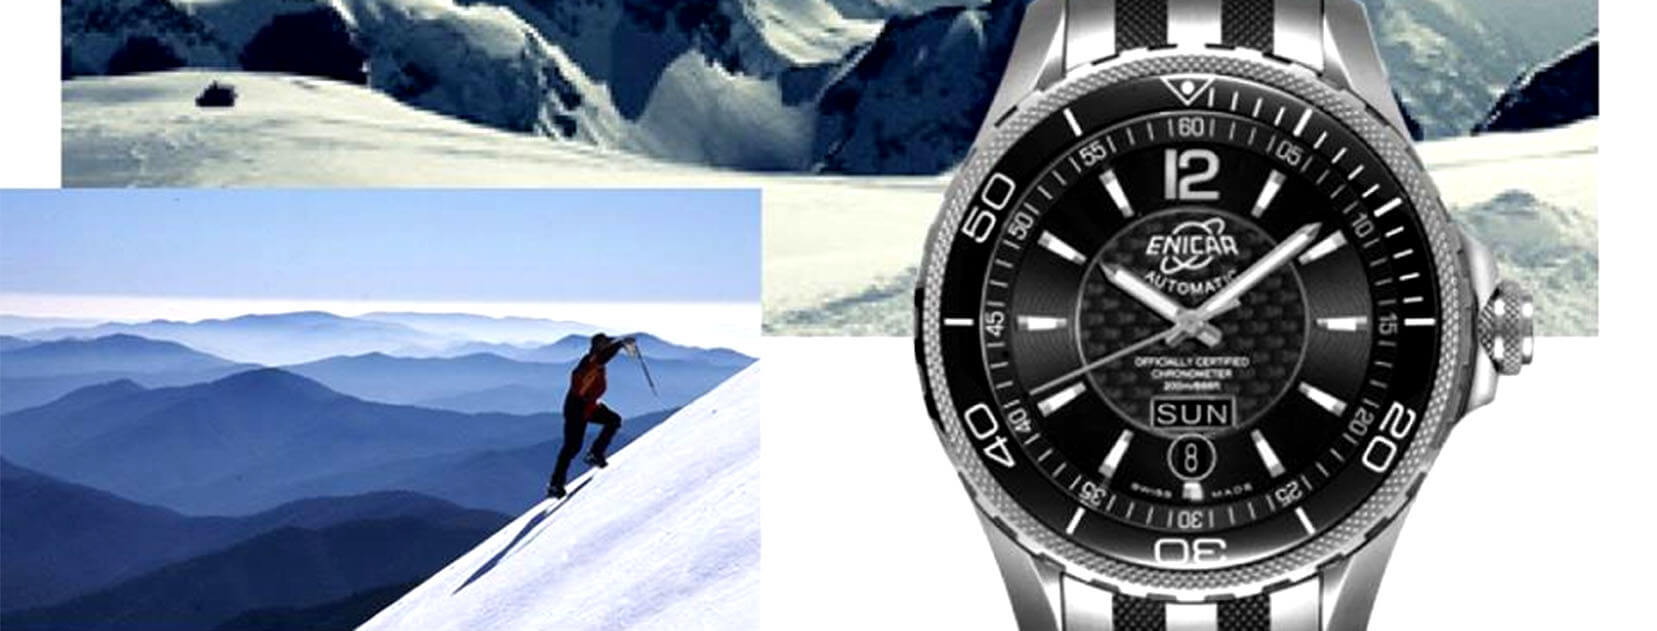 Những mẫu đồng hồ Enicar Chronometer  đã chinh phục thành công đỉnh núi Everest